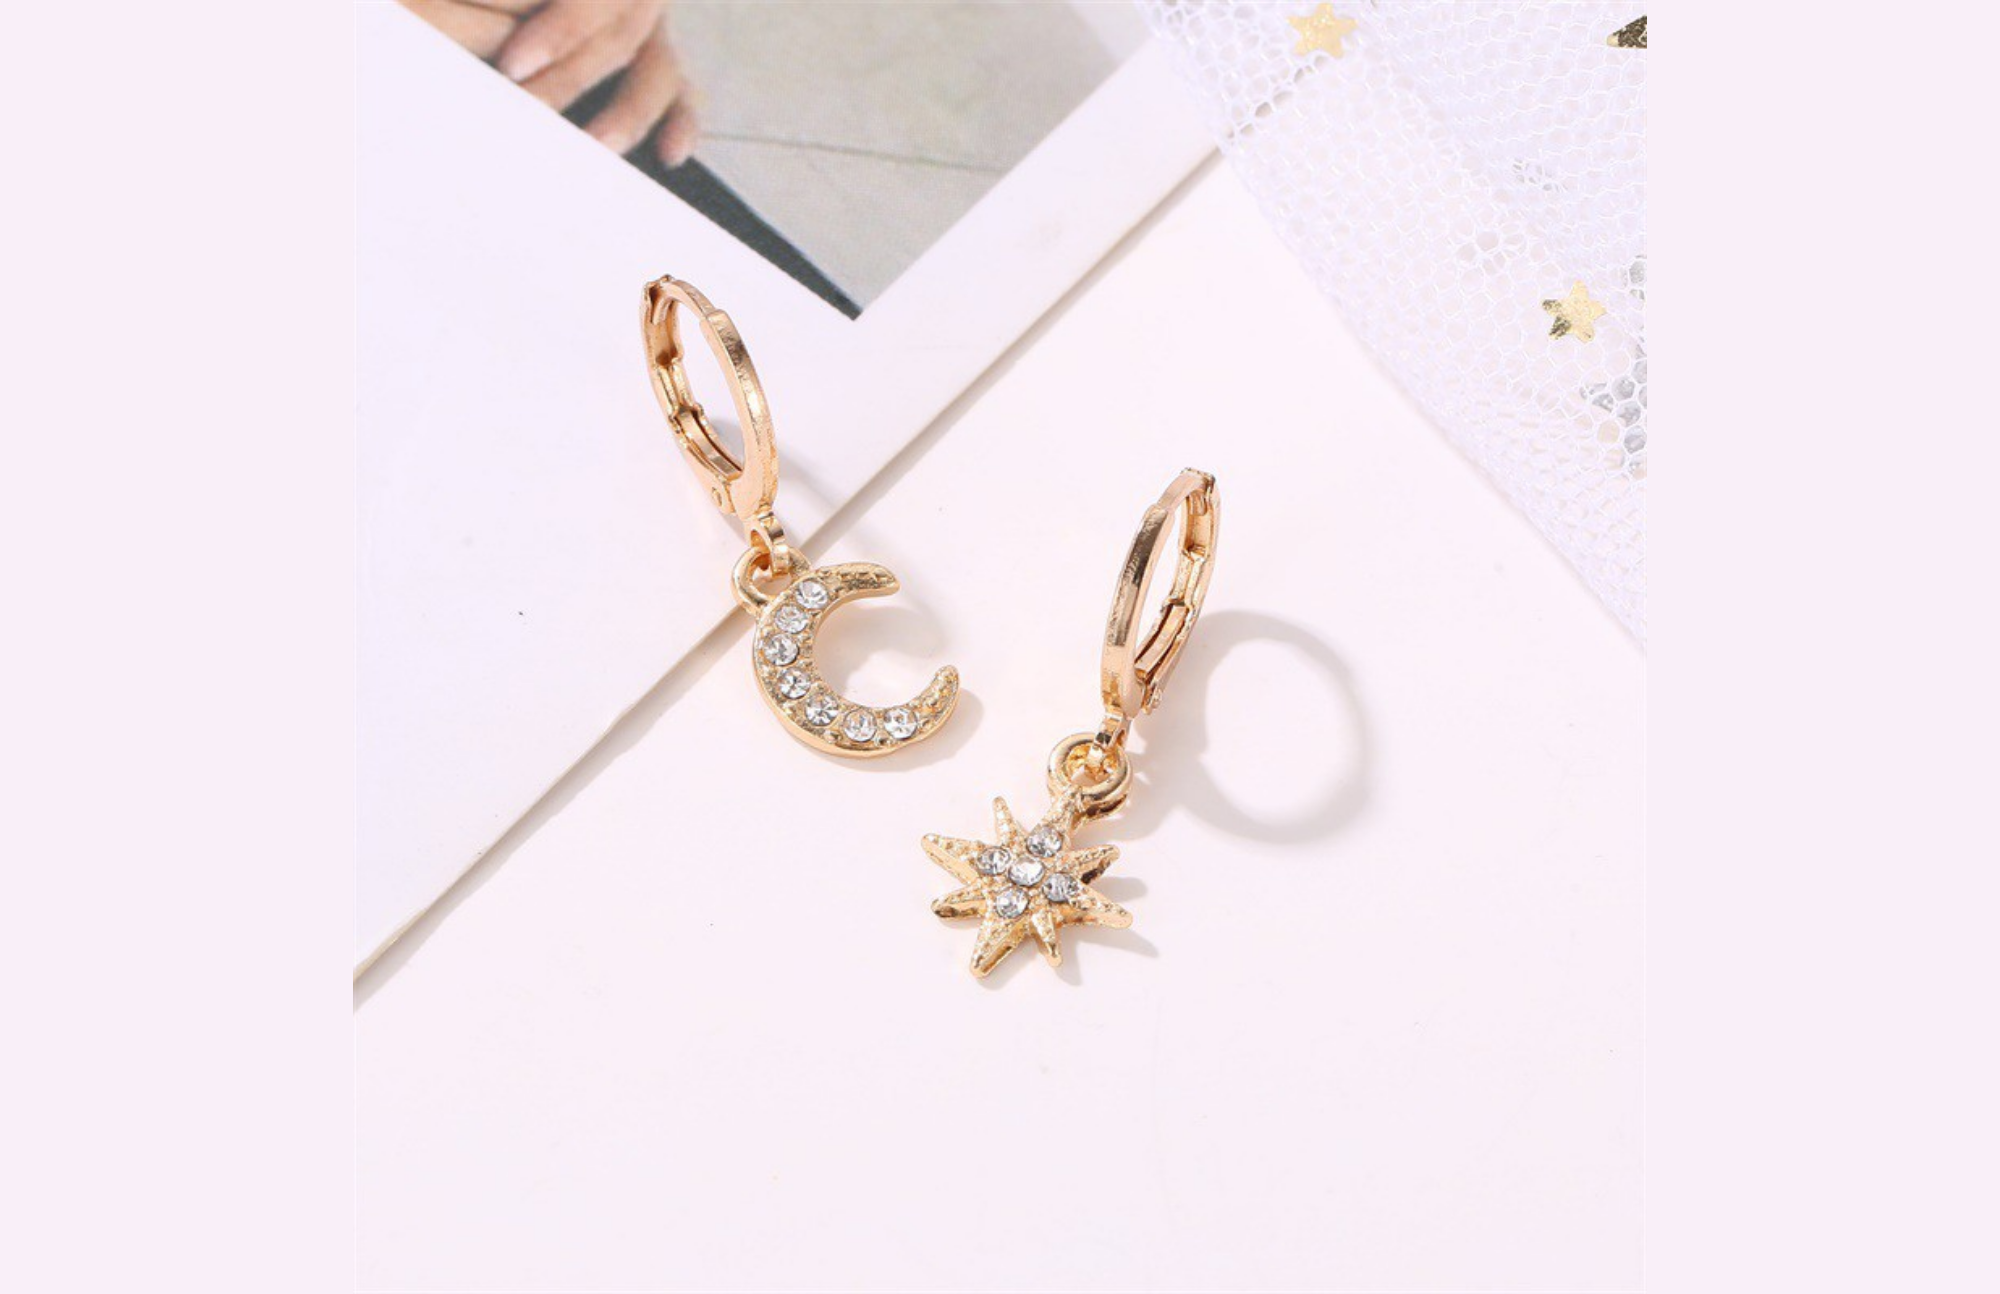 Asymmetrical Diamond Earrings - A New Earring Style